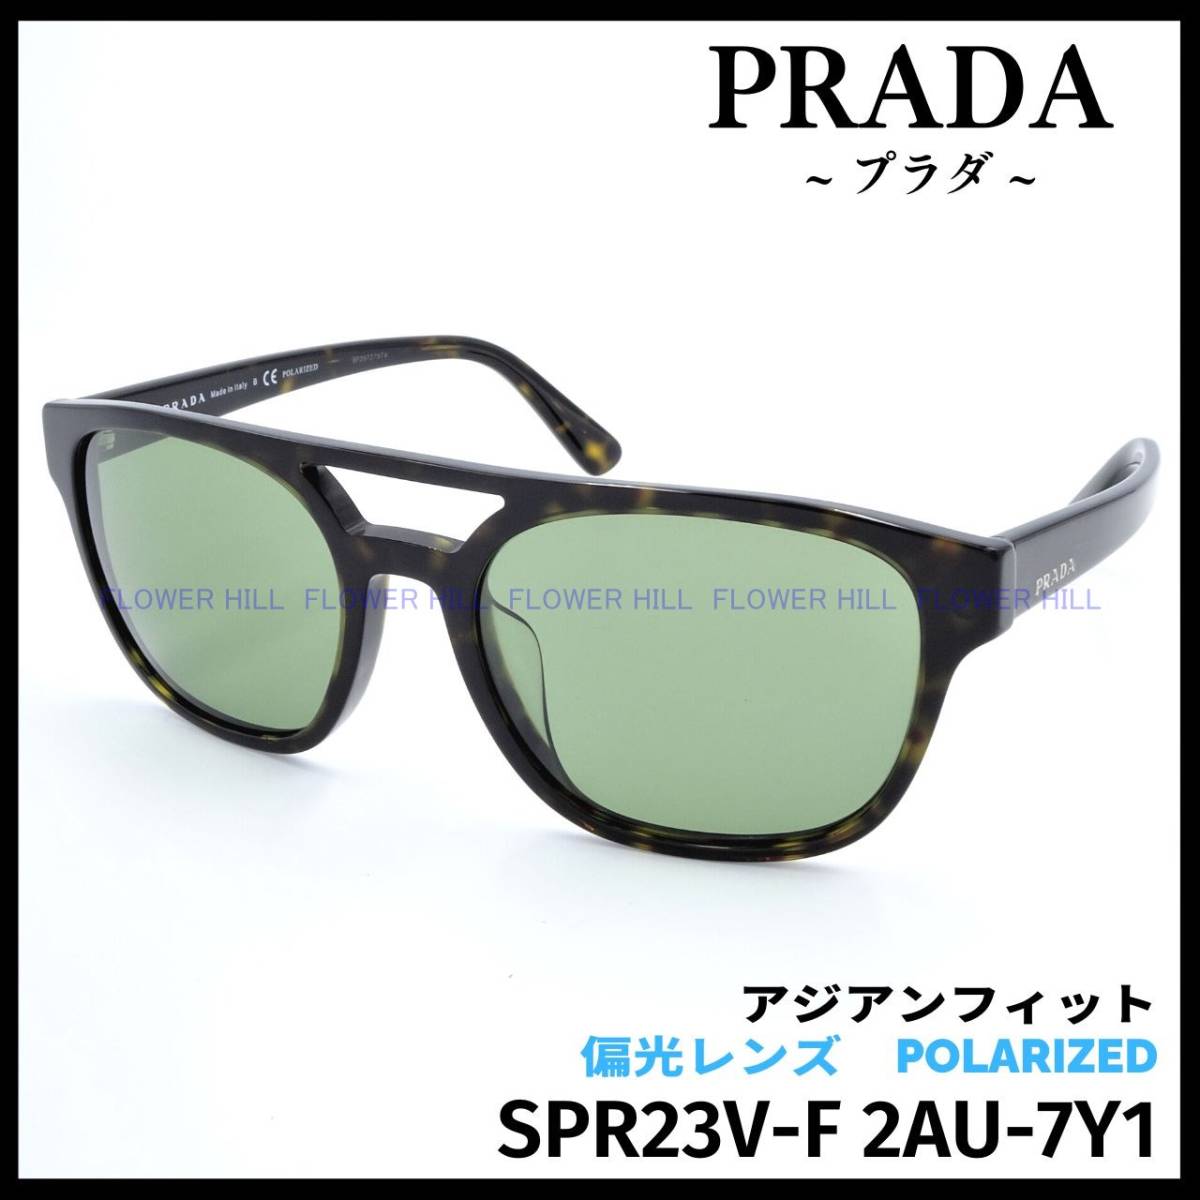 【新品・送料無料】プラダ PRADA SPR23V-F 2AU-7Y1 サングラス ハバナ アジアンフィット イタリア製 メンズ レディース